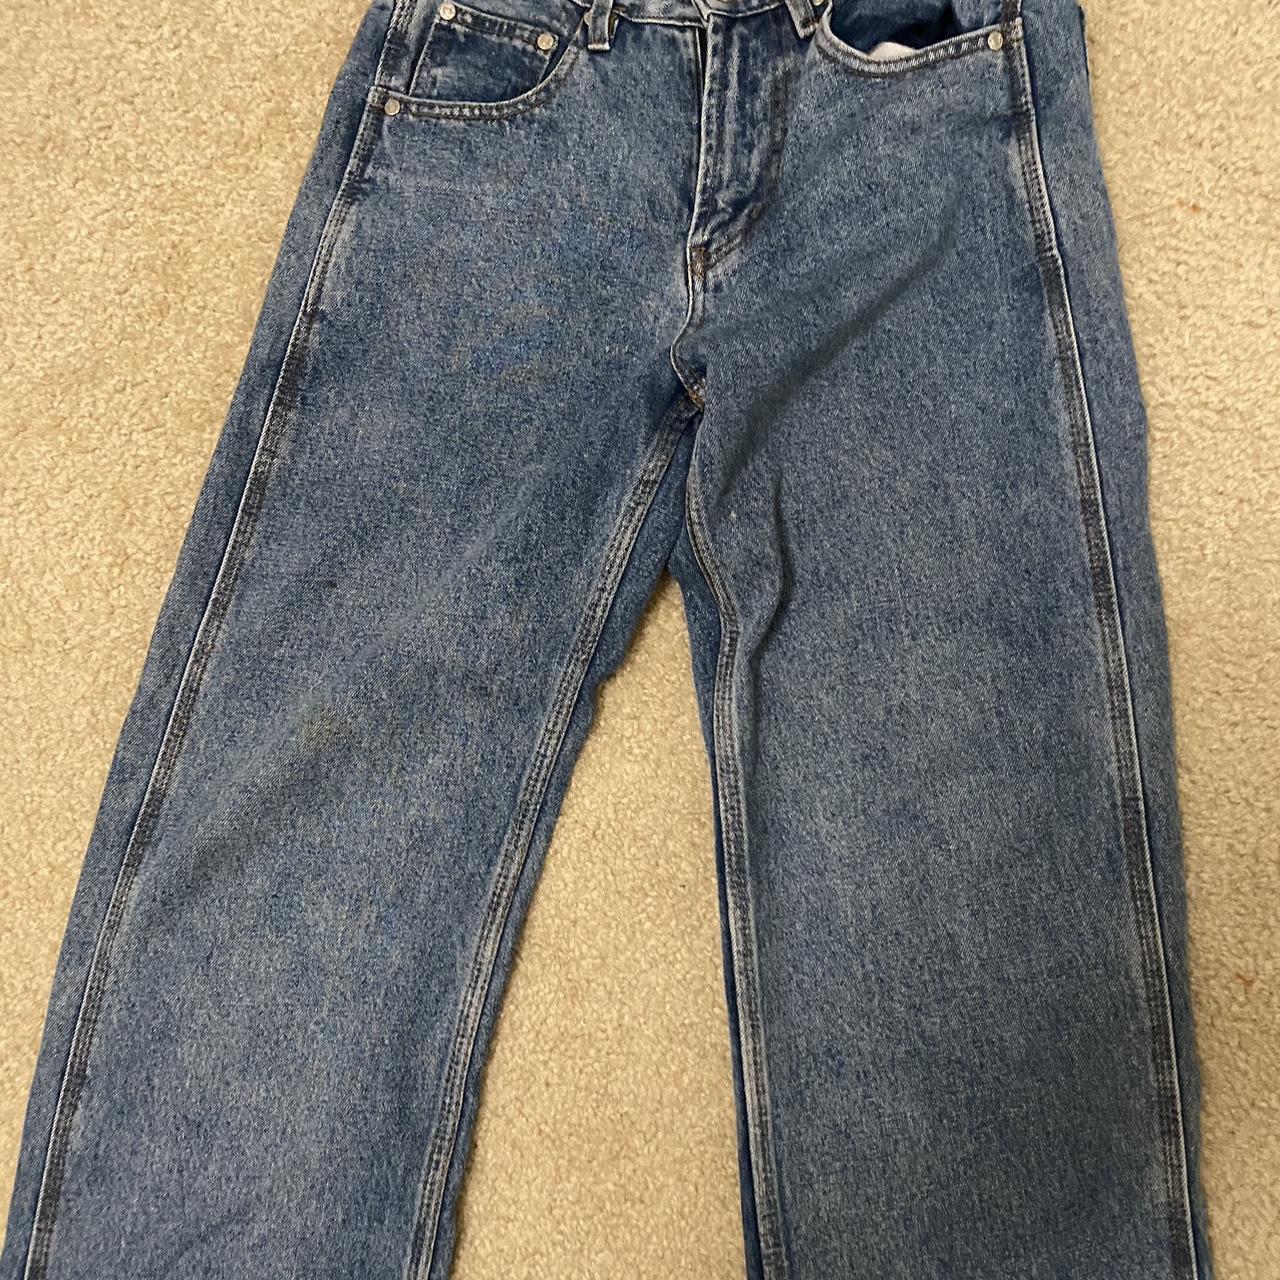 unif X jeans size M fits a 25-26 #unif #jeans - Depop